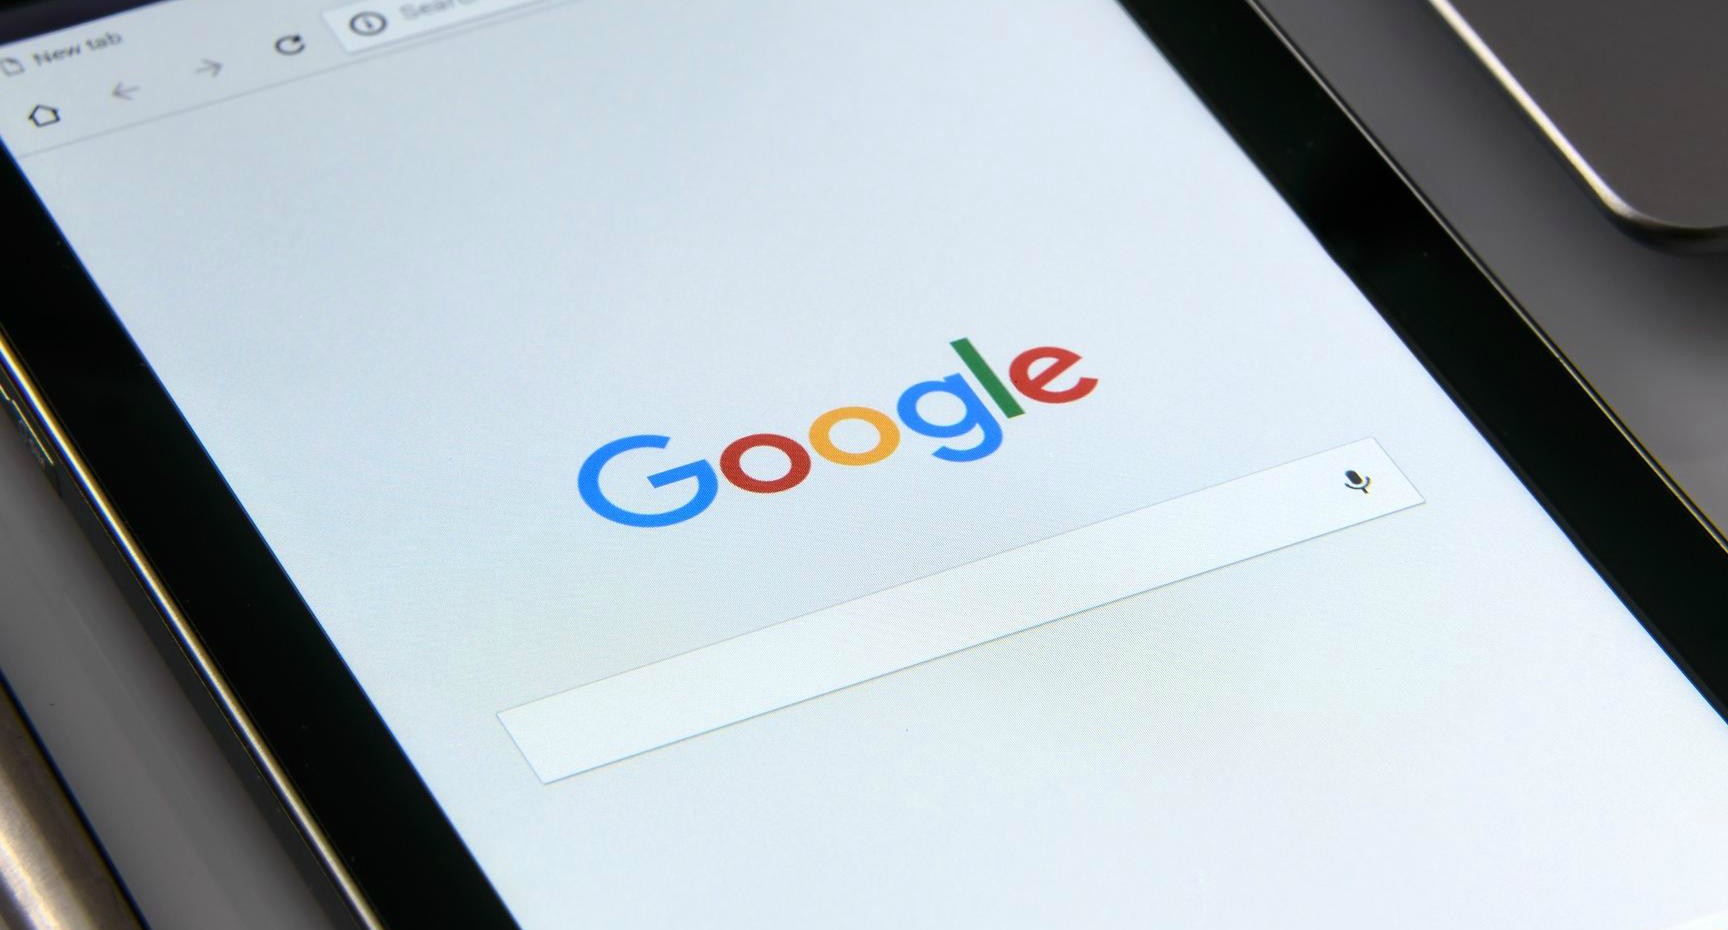 El buscador más popular de ls historia creó una nueva actualización de Google Flights para permitir reservaciones y pagos desde los dispositivos móviles